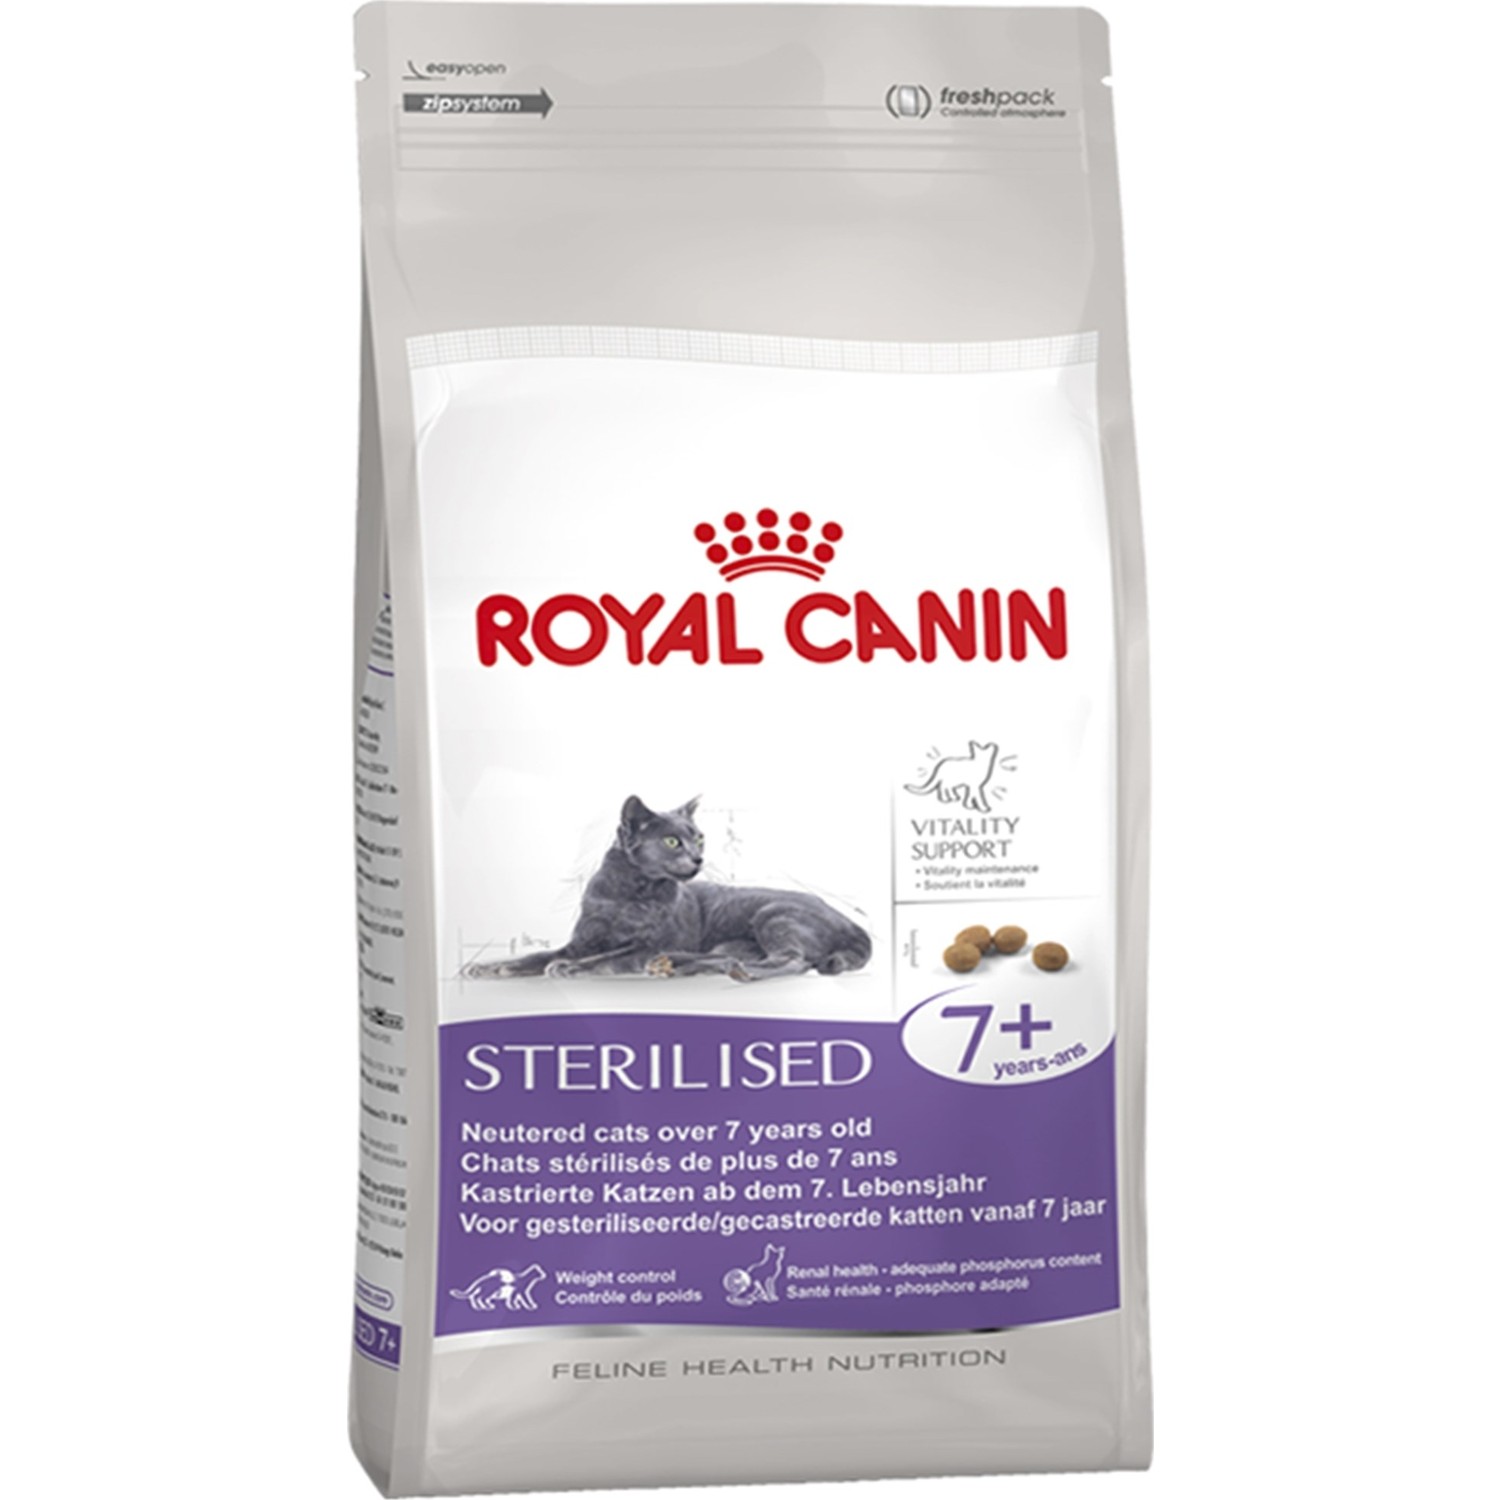 Royal Canin Sterilised +7 Kisirlaştirilmiş Yaşli Kedi Mamasi Fiyatı